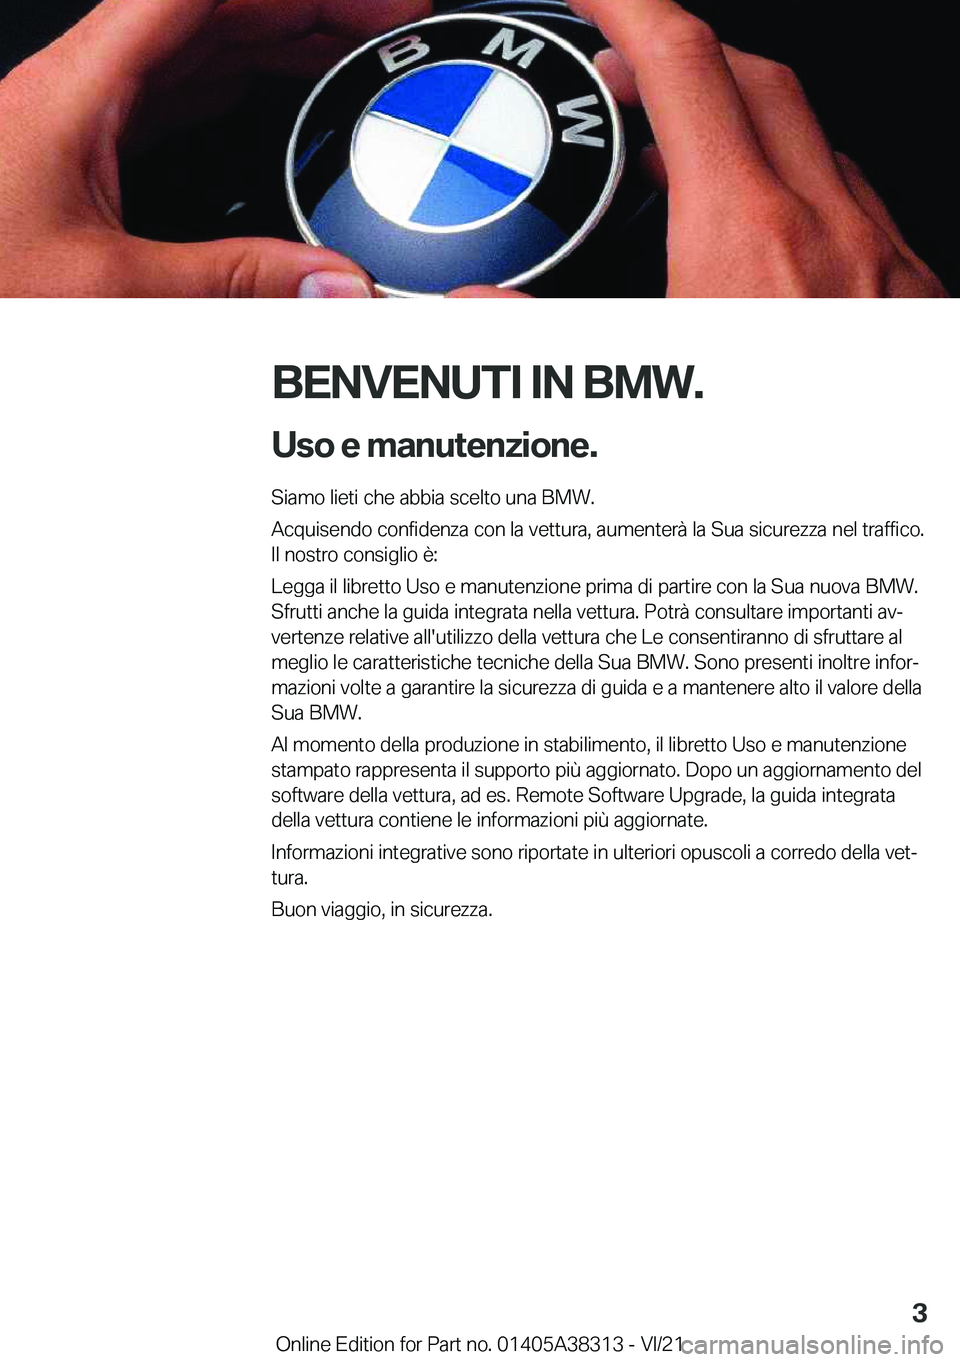 BMW 2 SERIES GRAN COUPE 2022  Libretti Di Uso E manutenzione (in Italian) �B�E�N�V�E�N�U�T�I��I�N��B�M�W�.�U�s�o��e��m�a�n�u�t�e�n�z�i�o�n�e�.
�S�i�a�m�o��l�i�e�t�i��c�h�e��a�b�b�i�a��s�c�e�l�t�o��u�n�a��B�M�W�.
�A�c�q�u�i�s�e�n�d�o��c�o�n�f�i�d�e�n�z�a��c�o�n�